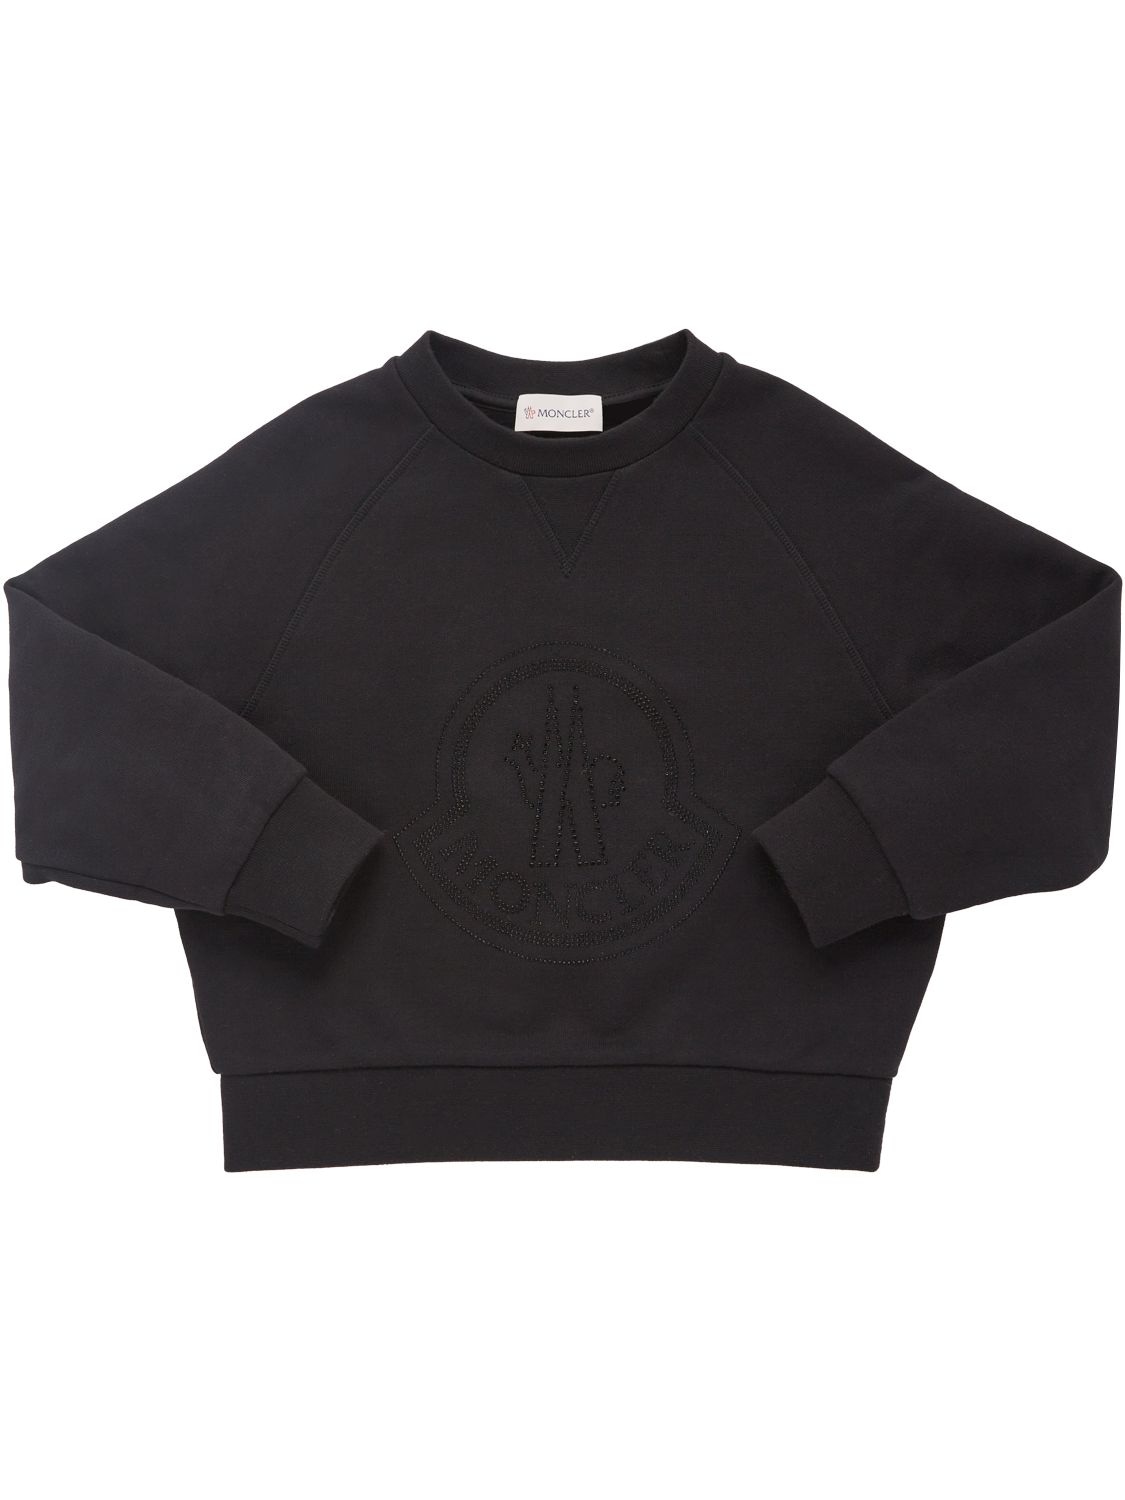 Moncler Kids' Brushed Cotton Sweatshirt In Black